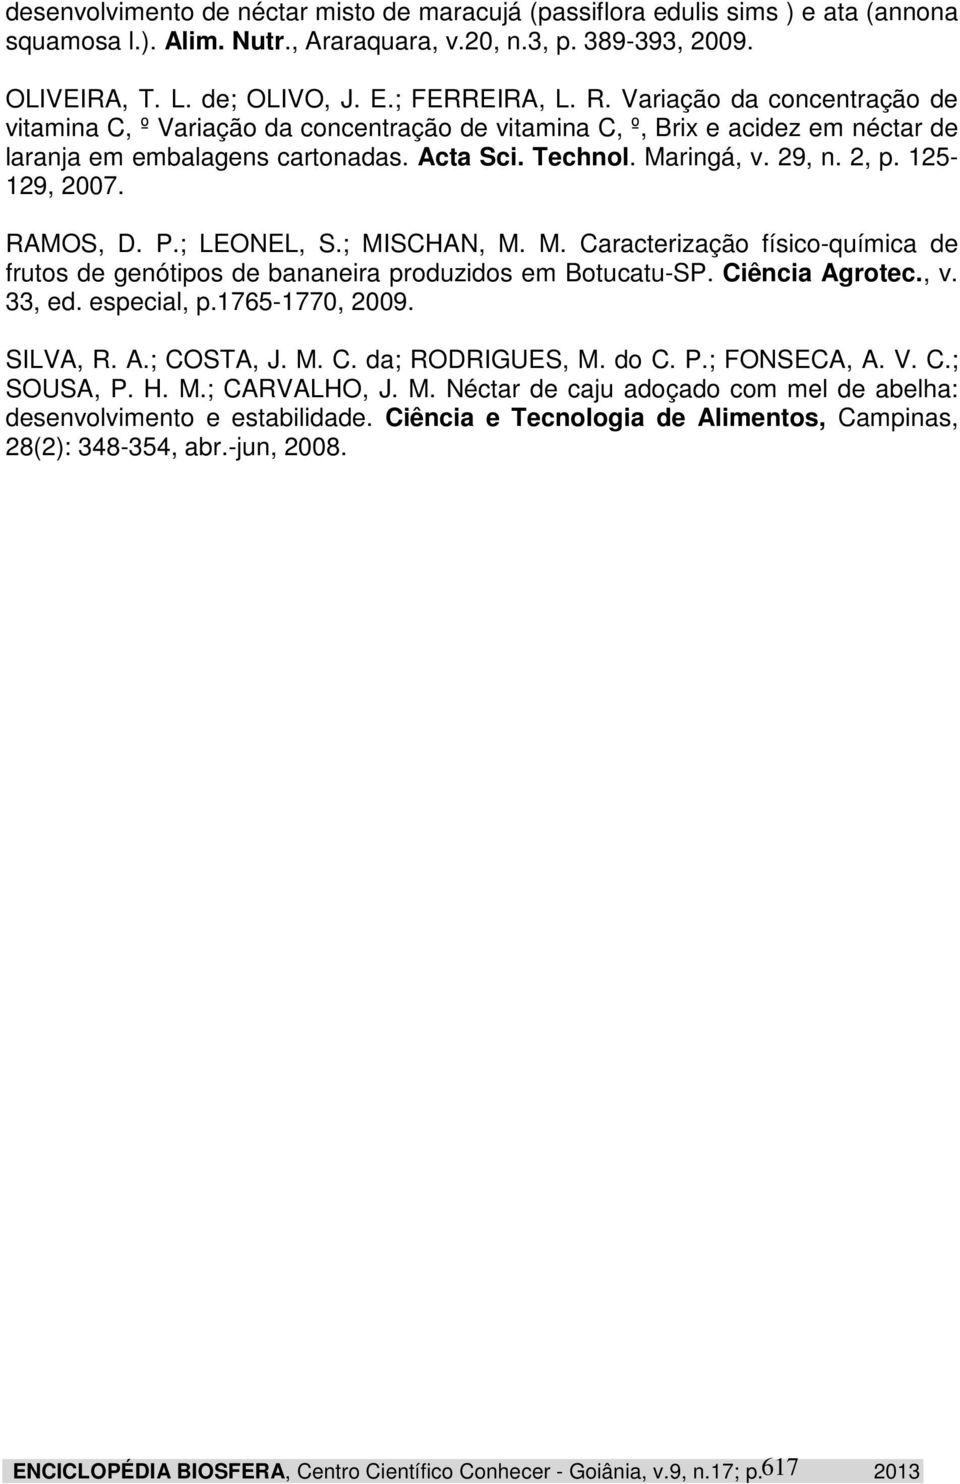 125-129, 2007. RAMOS, D. P.; LEONEL, S.; MISCHAN, M. M. Caracterização físico-química de frutos de genótipos de bananeira produzidos em Botucatu-SP. Ciência Agrotec., v. 33, ed. especial, p.